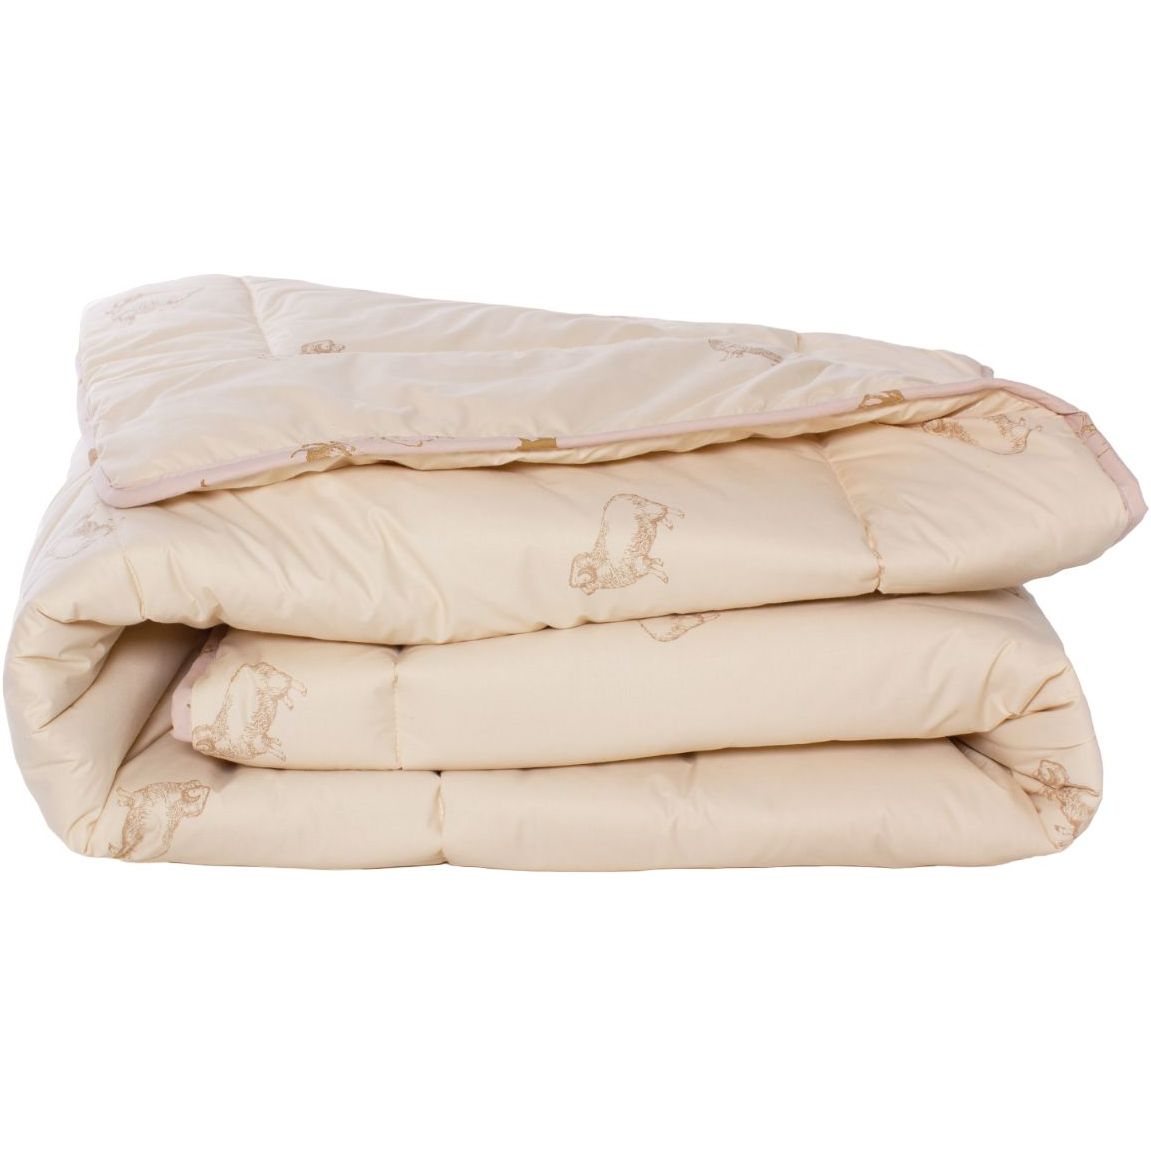 Одеяло шерстяное MirSon Gold Camel №024, зимнее, 155x215 см, кремовое - фото 1